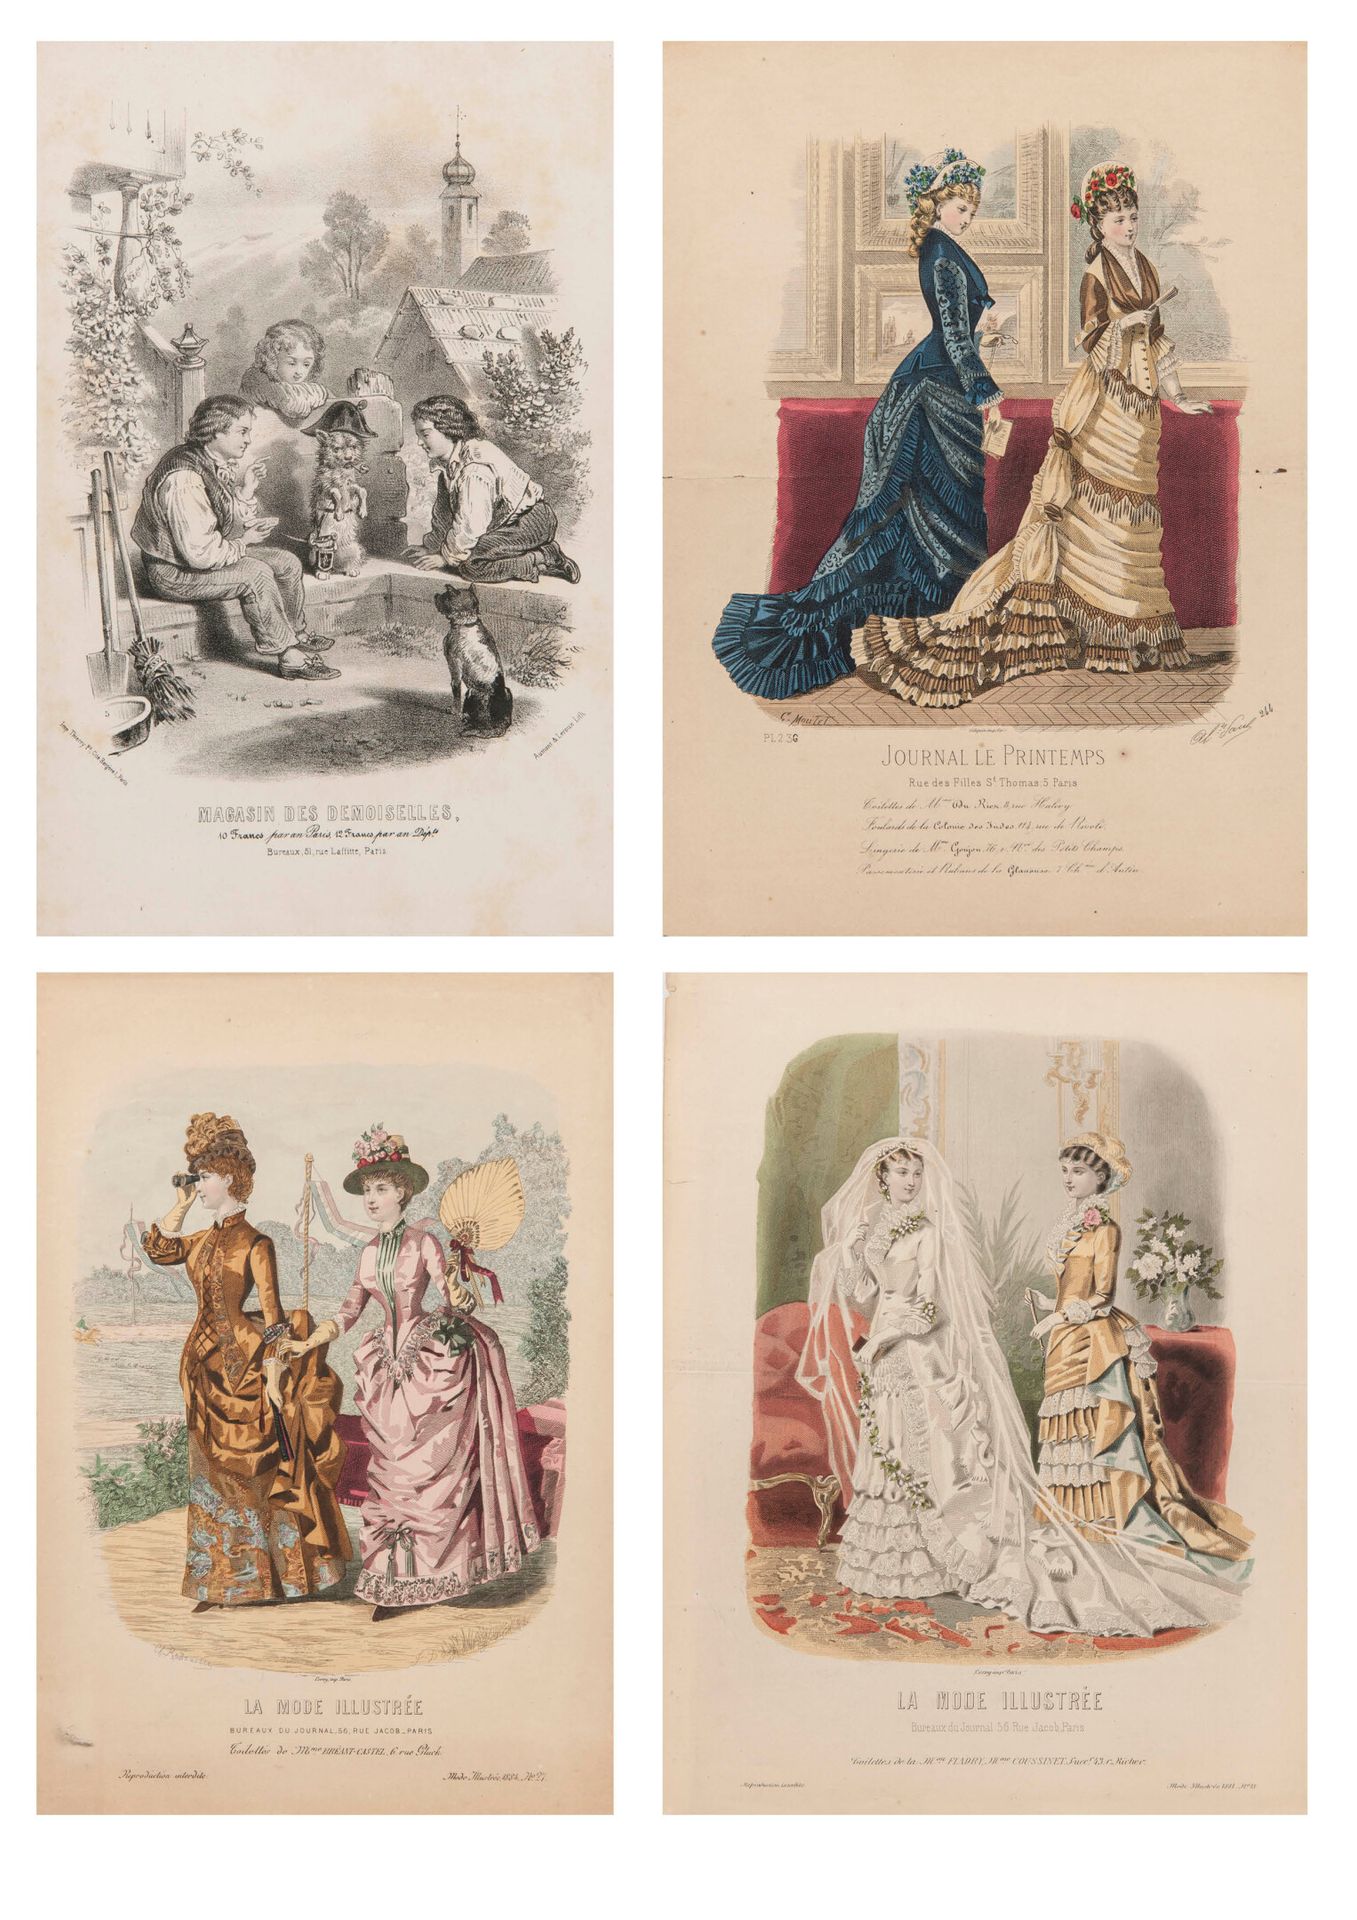 LA MODE ILLUSTRÉE 28 Farbtafeln aus den Jahren 1865 bis 1884.

Teilweise gebräun&hellip;